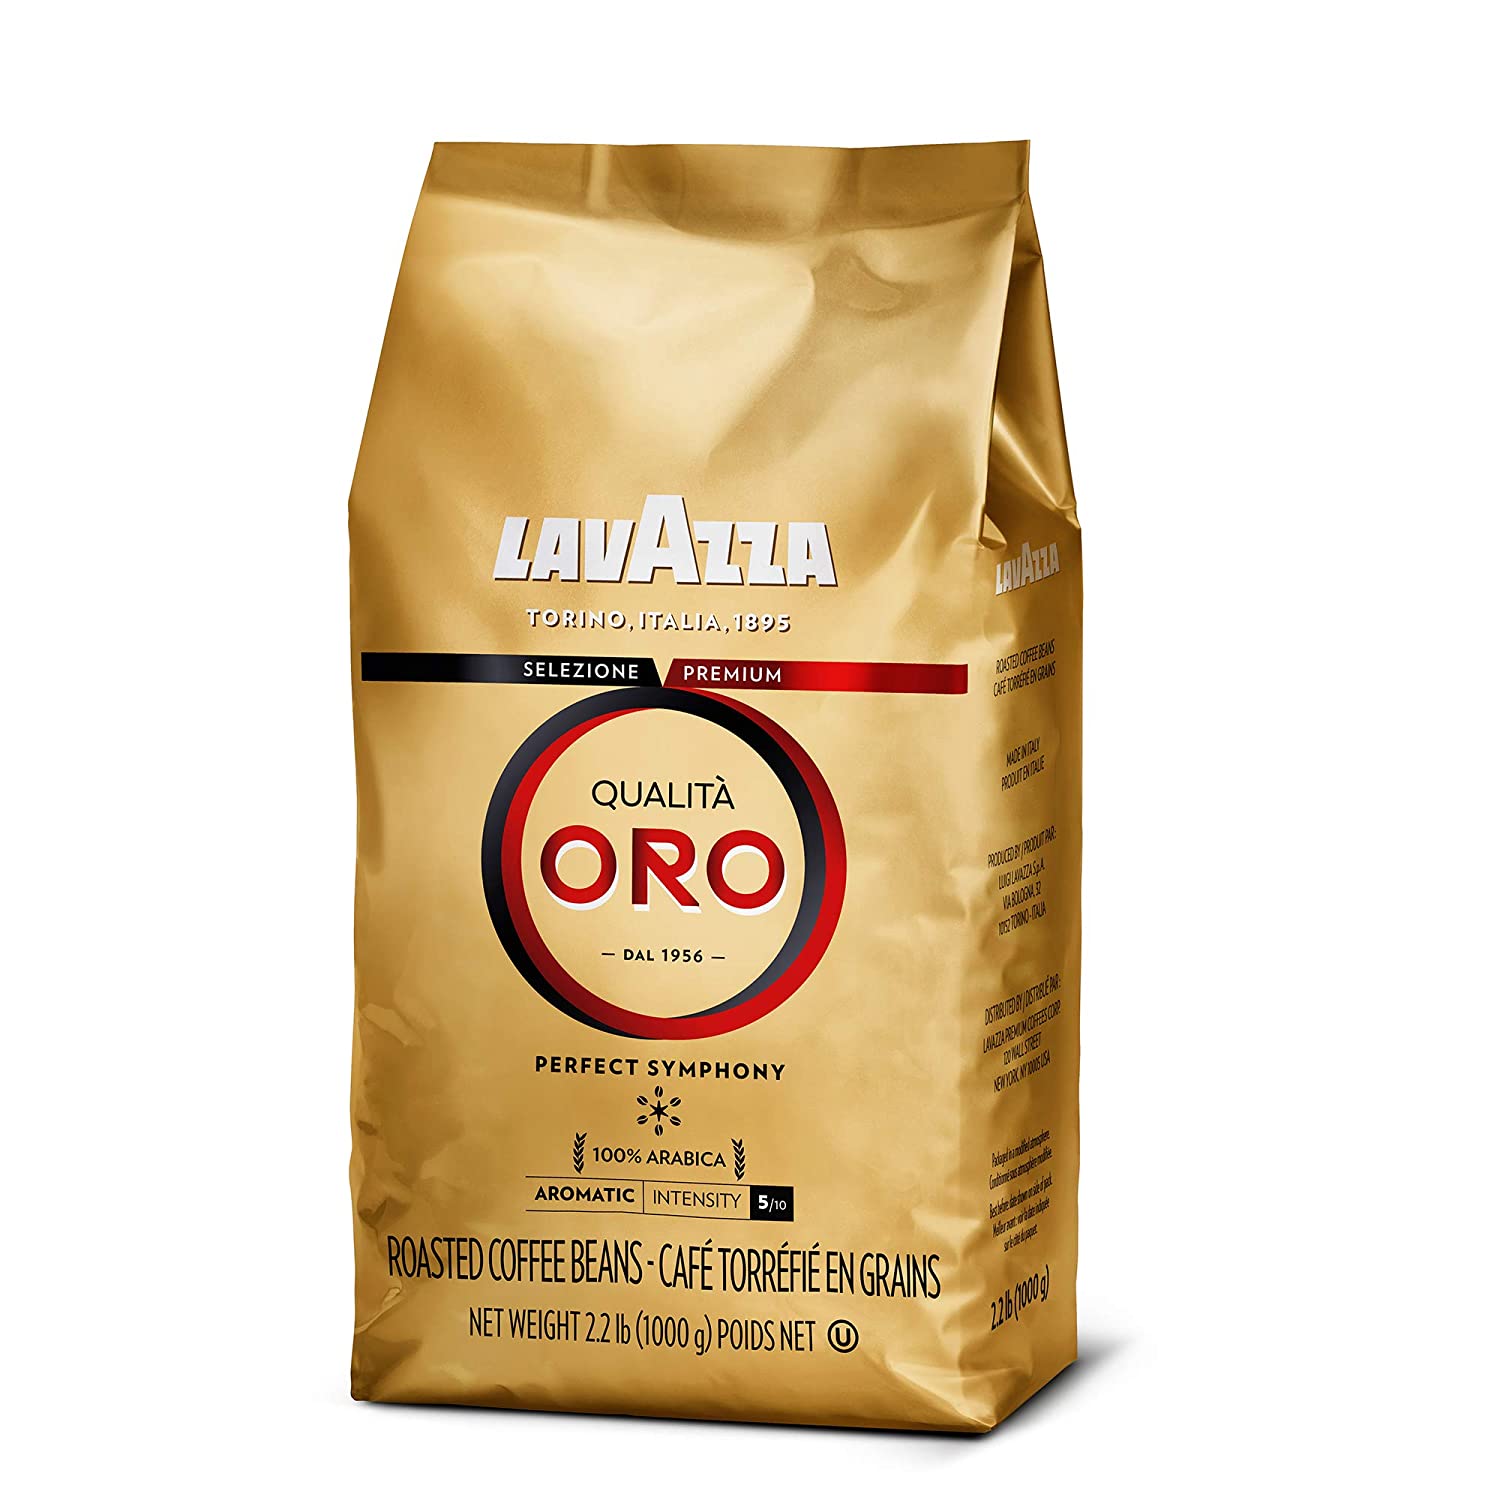 Lavazza Espresso Coffee Bean sampler - Premium espresso blends